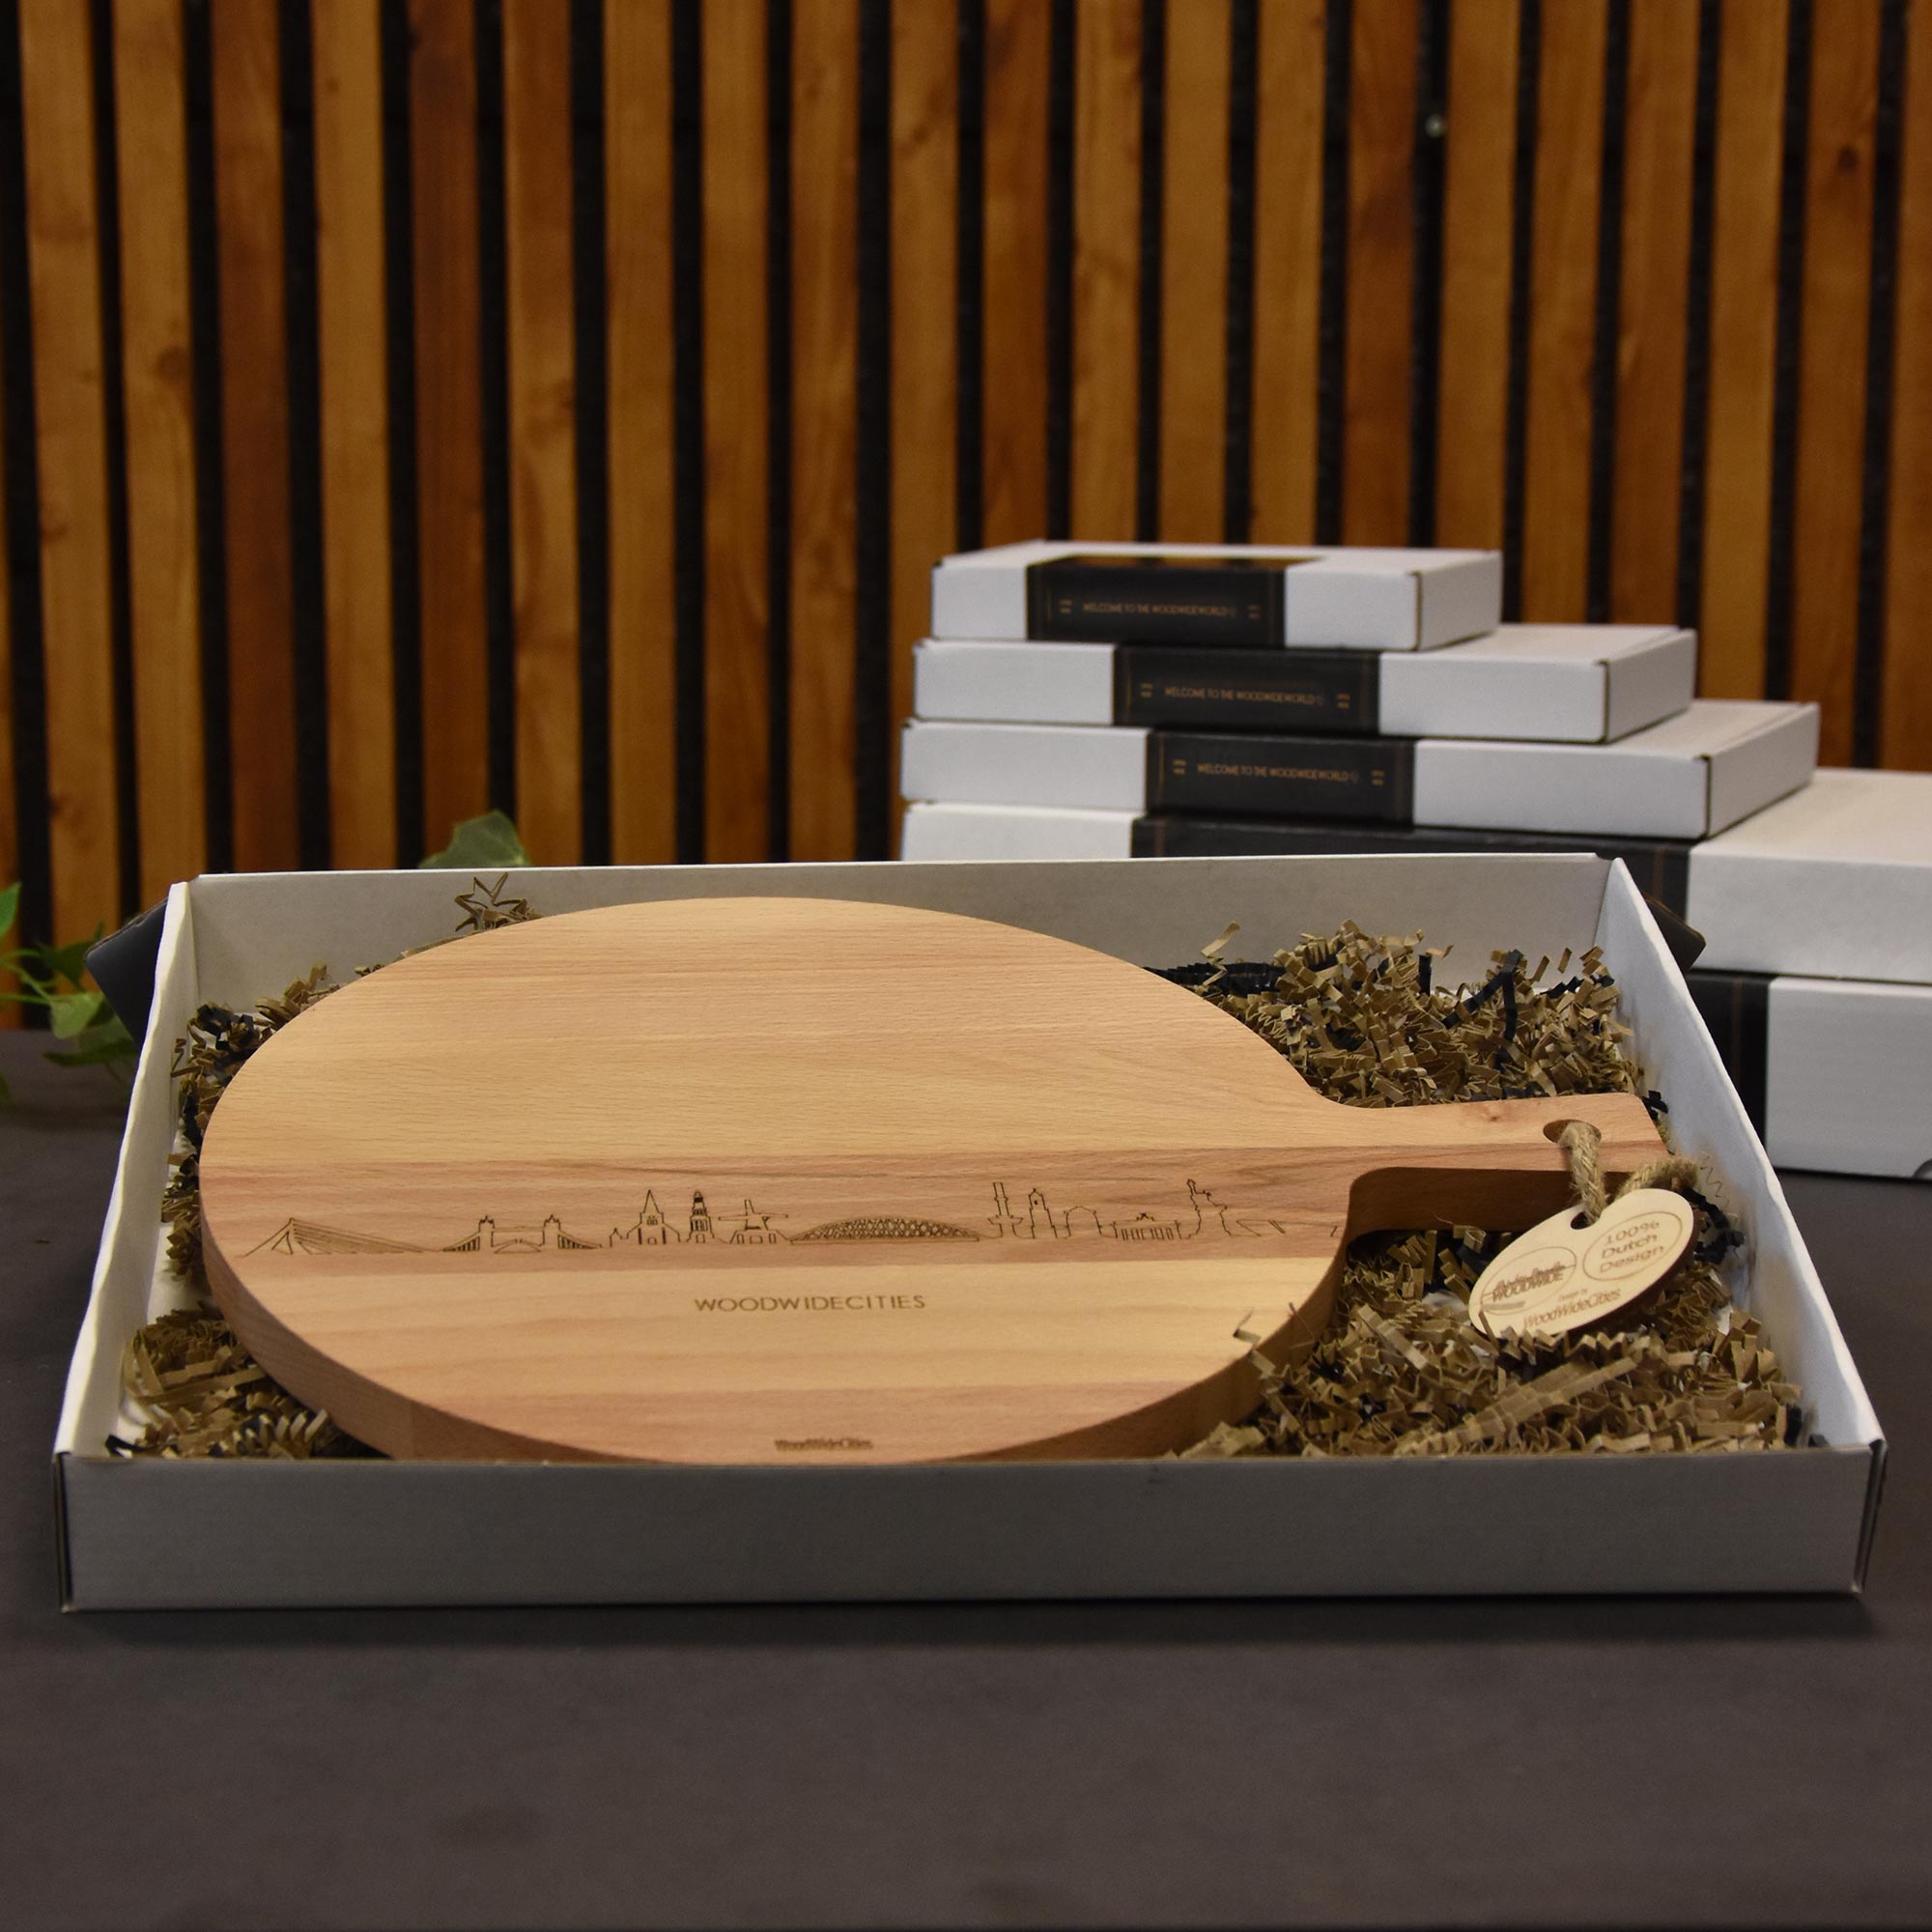 Skyline Serveerplank Rond Alphen aan den Rijn houten cadeau decoratie relatiegeschenk van WoodWideCities